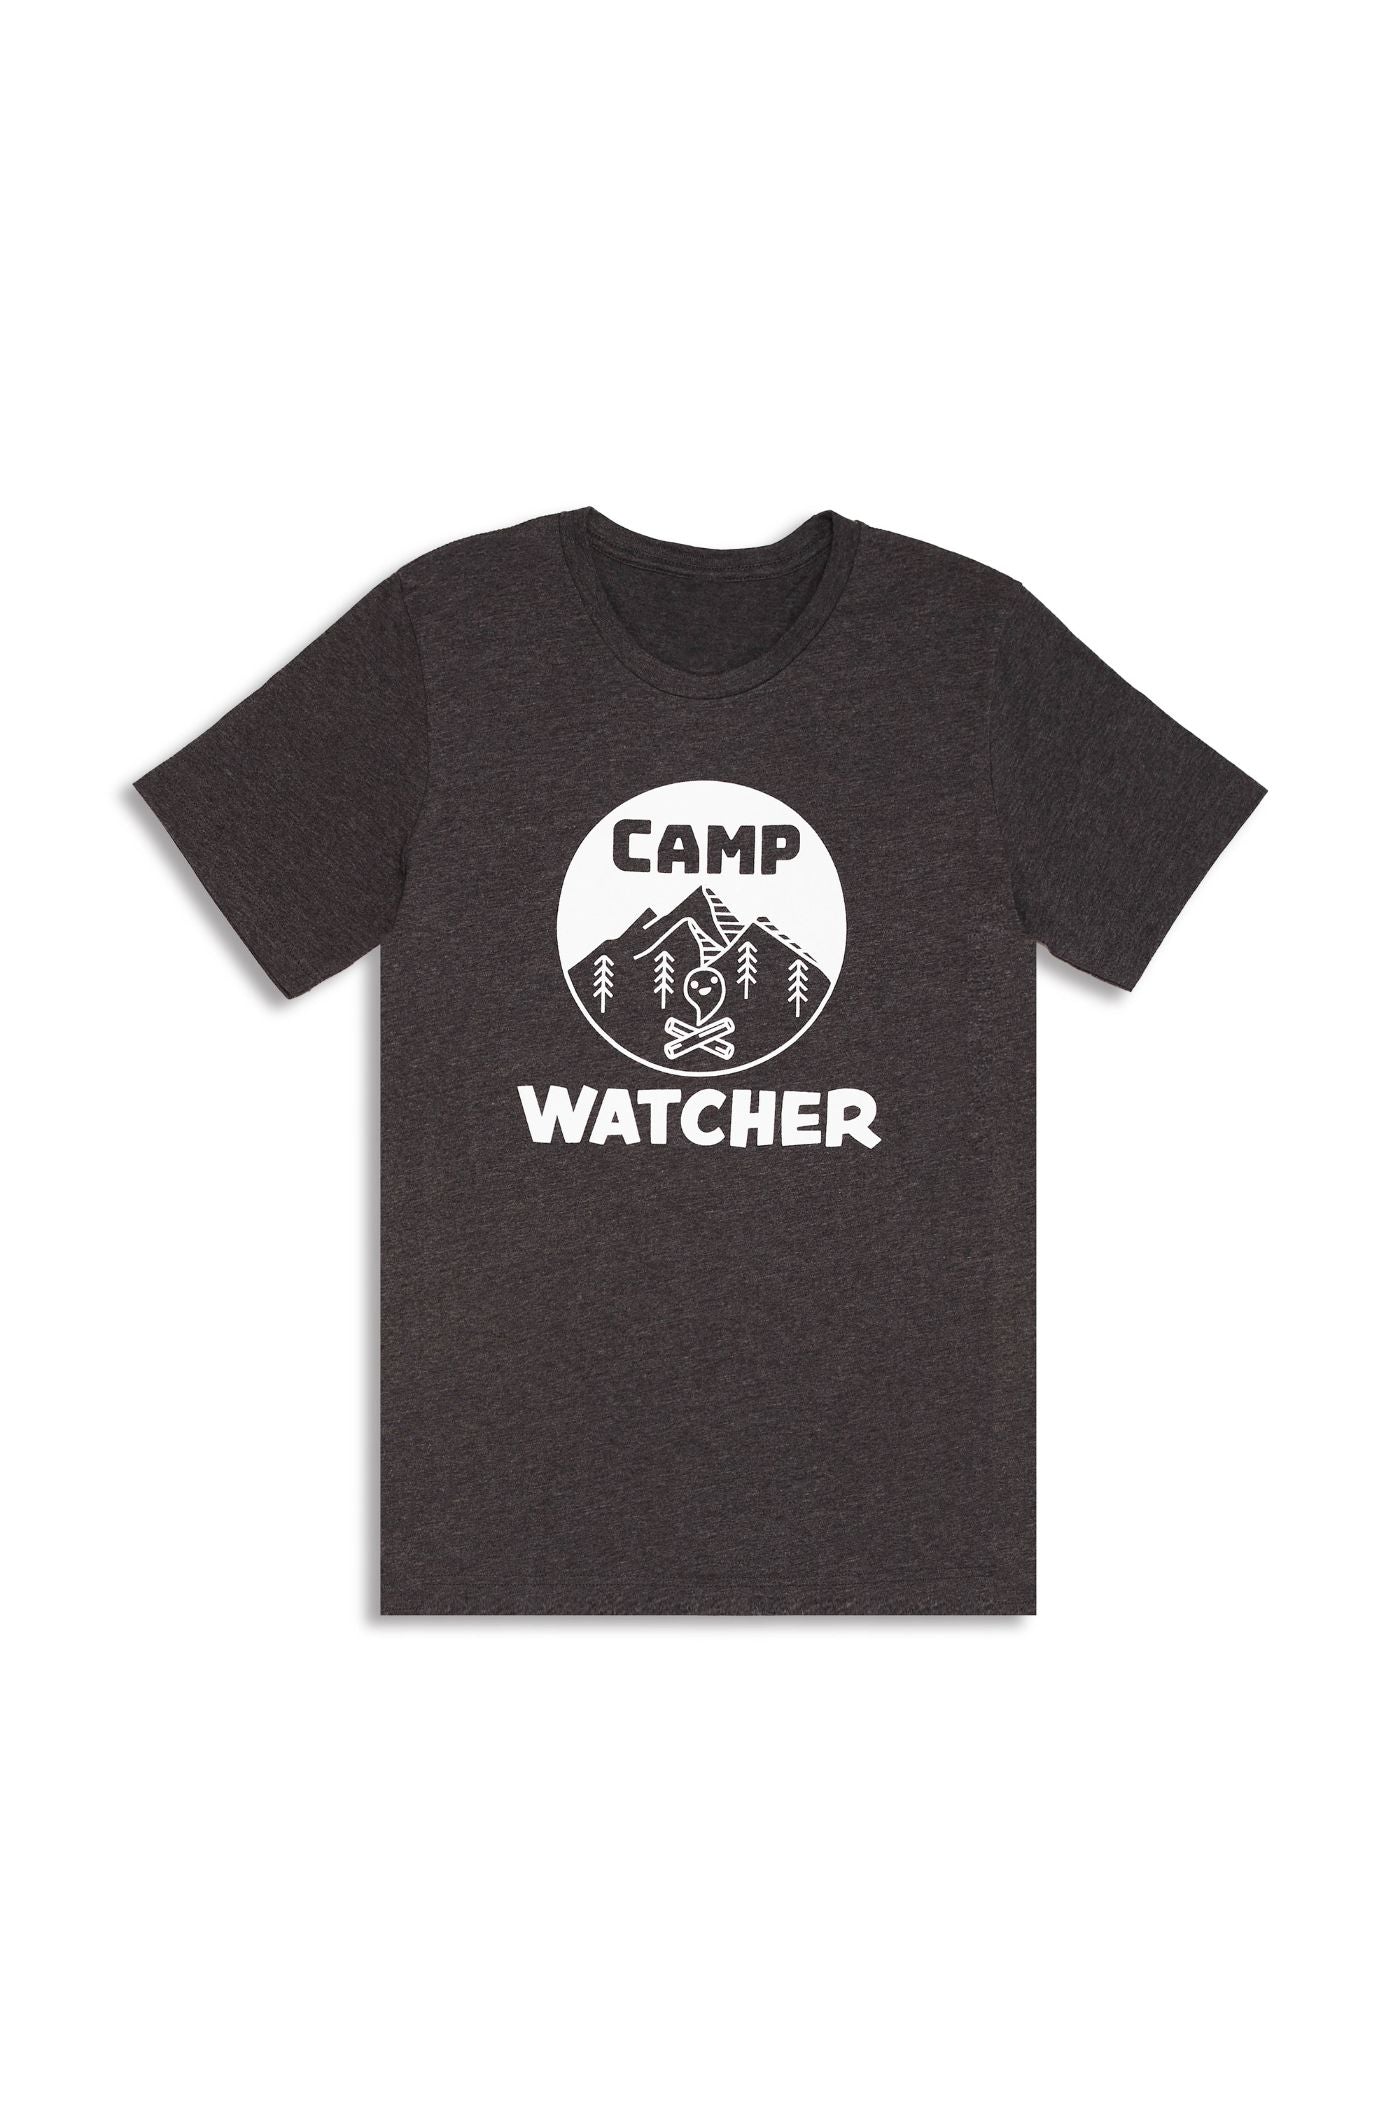 WATCHER | 1st Edition Camp Watcher Tee